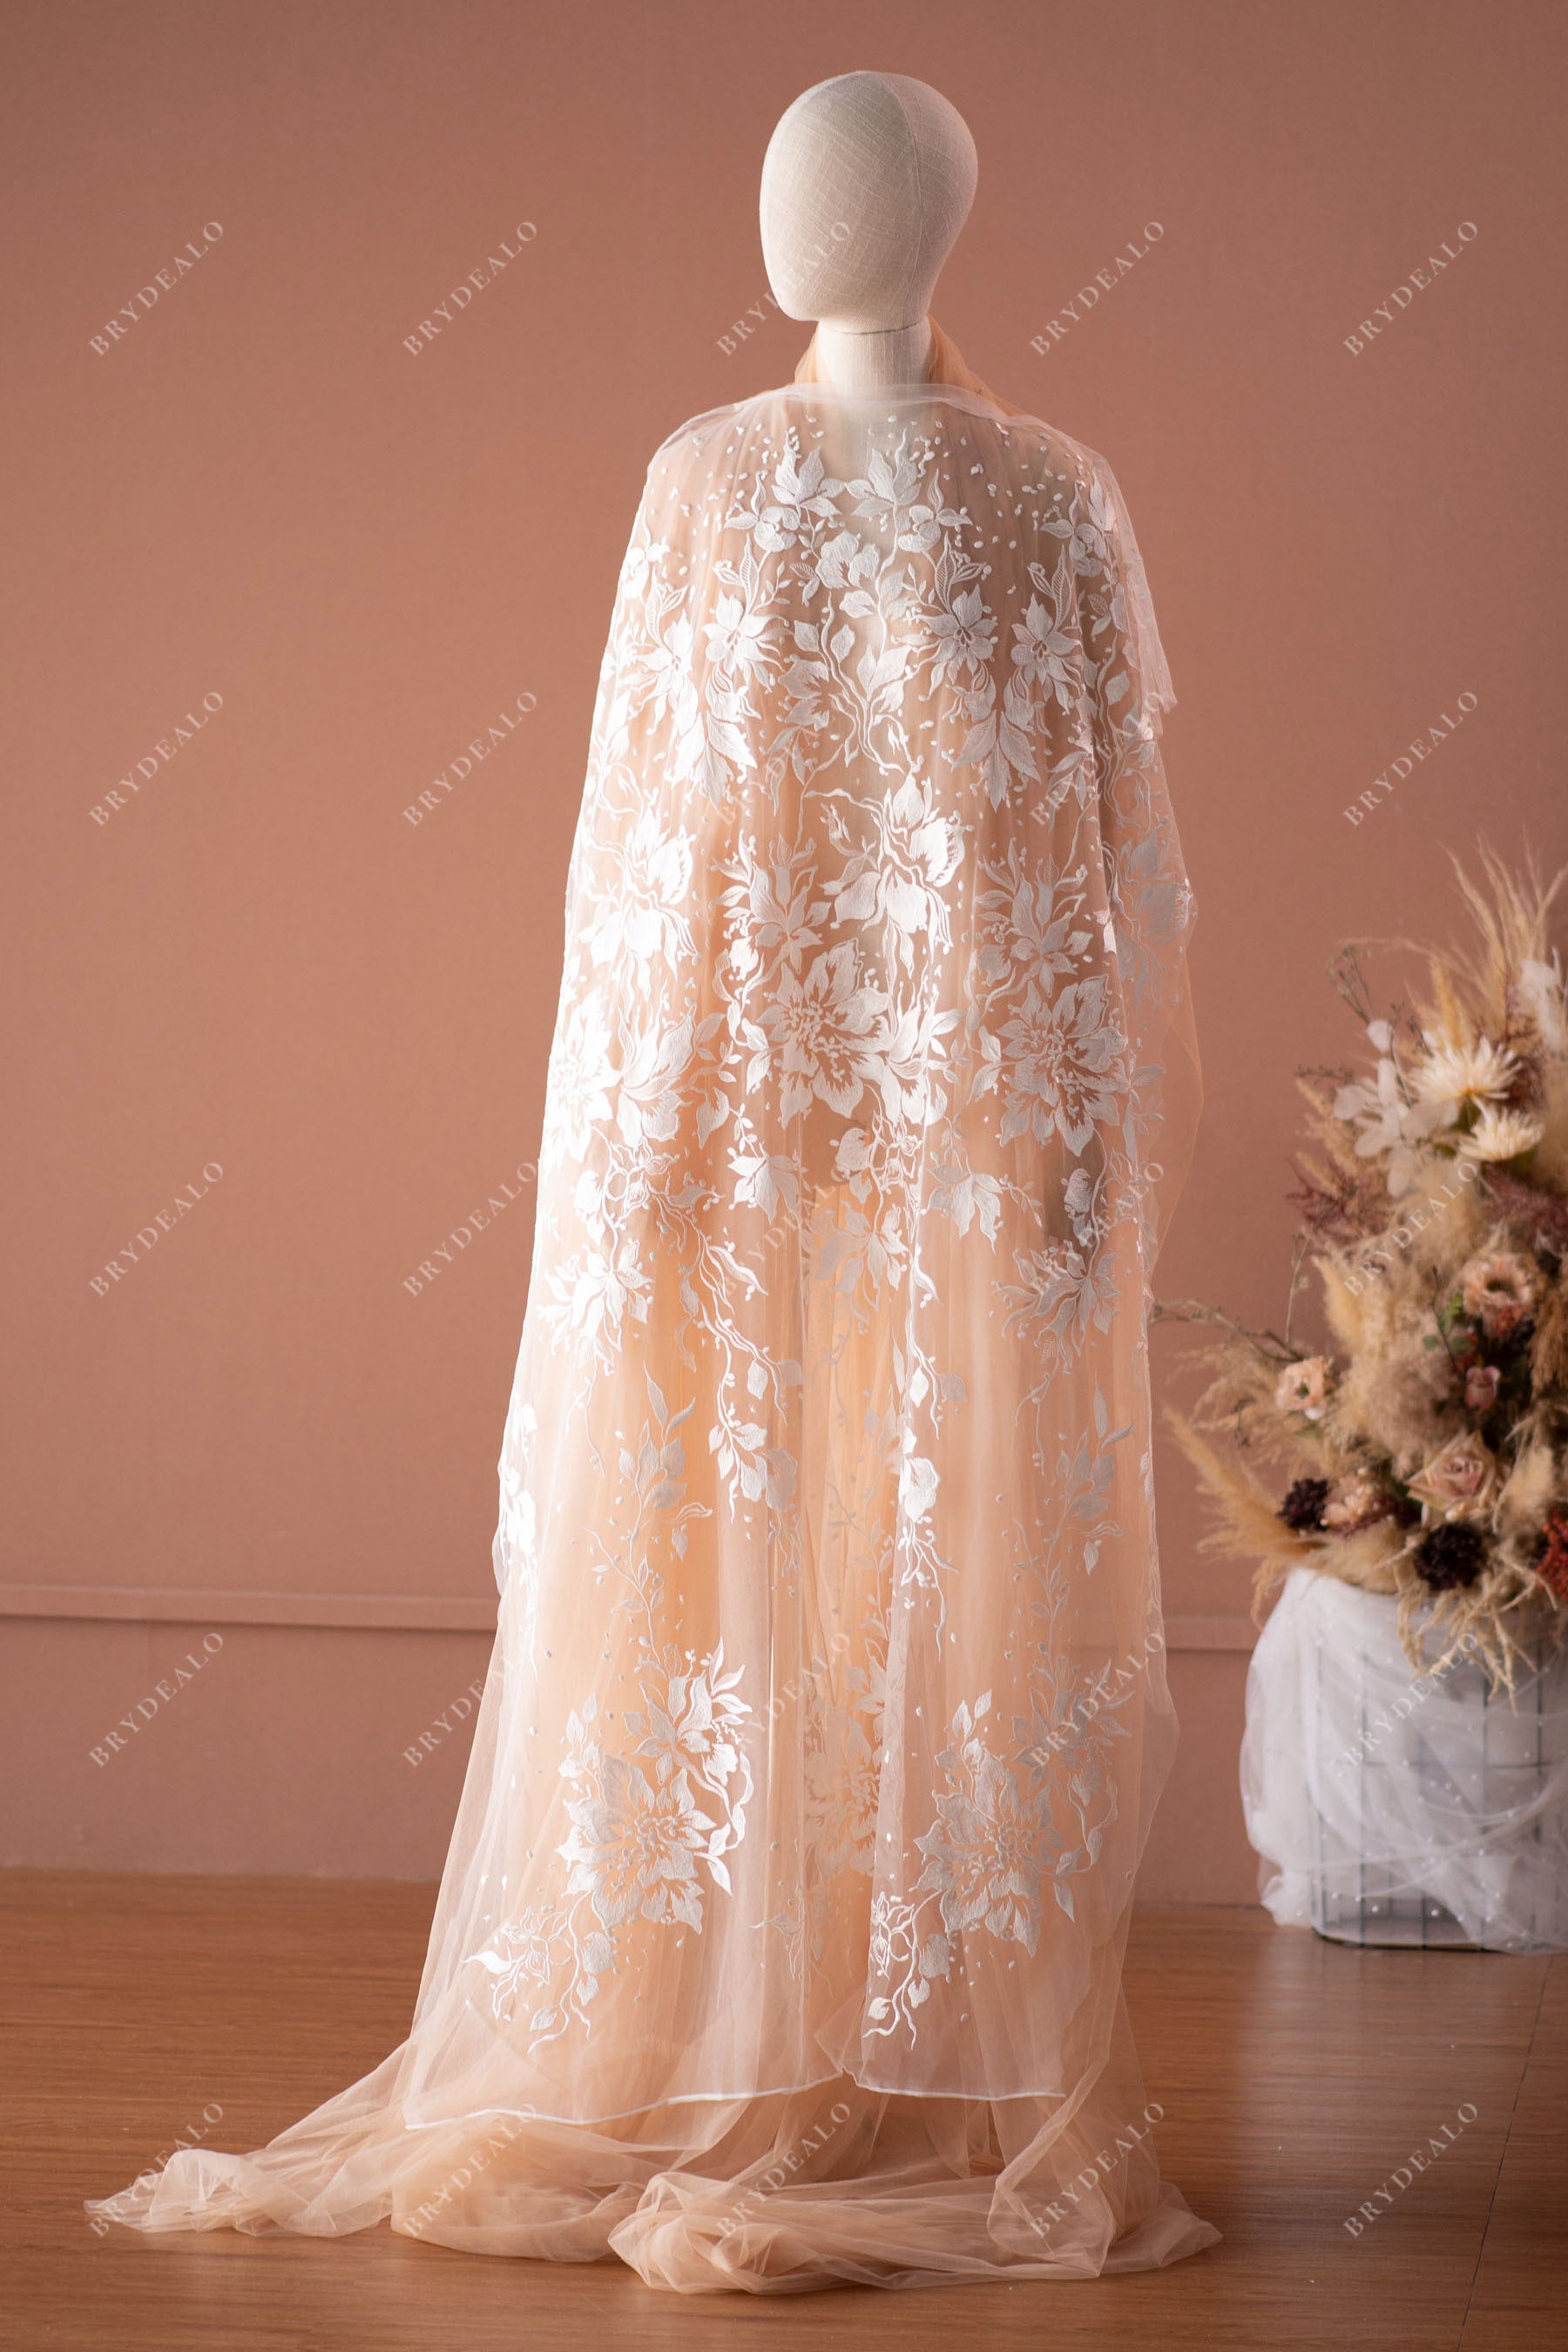 custom wedding dress flower lace fabric by the yard